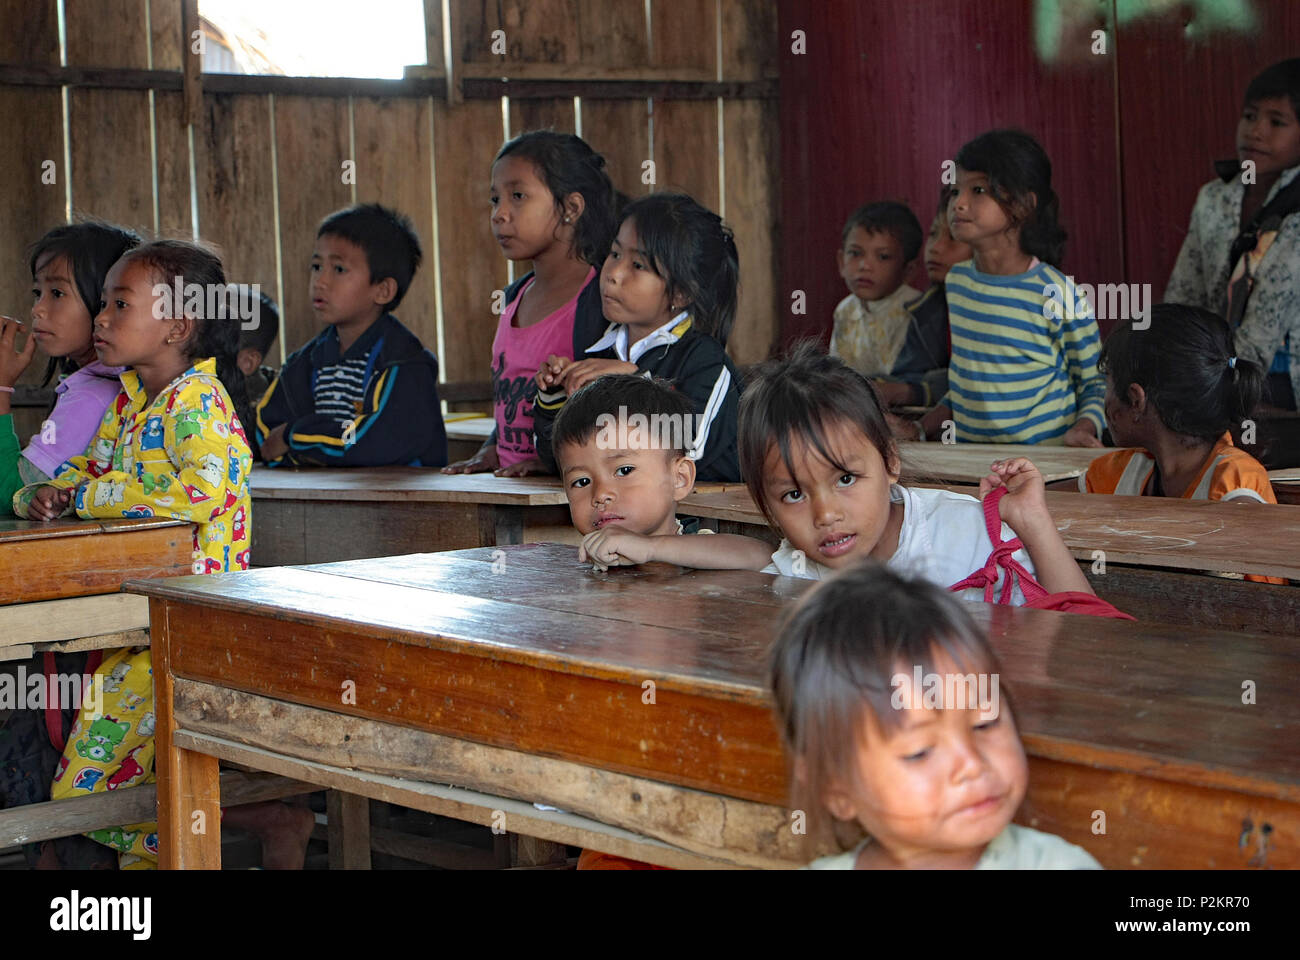 Cambodian children sitting at their desks in Ream local school listen to their teacher. Stock Photo